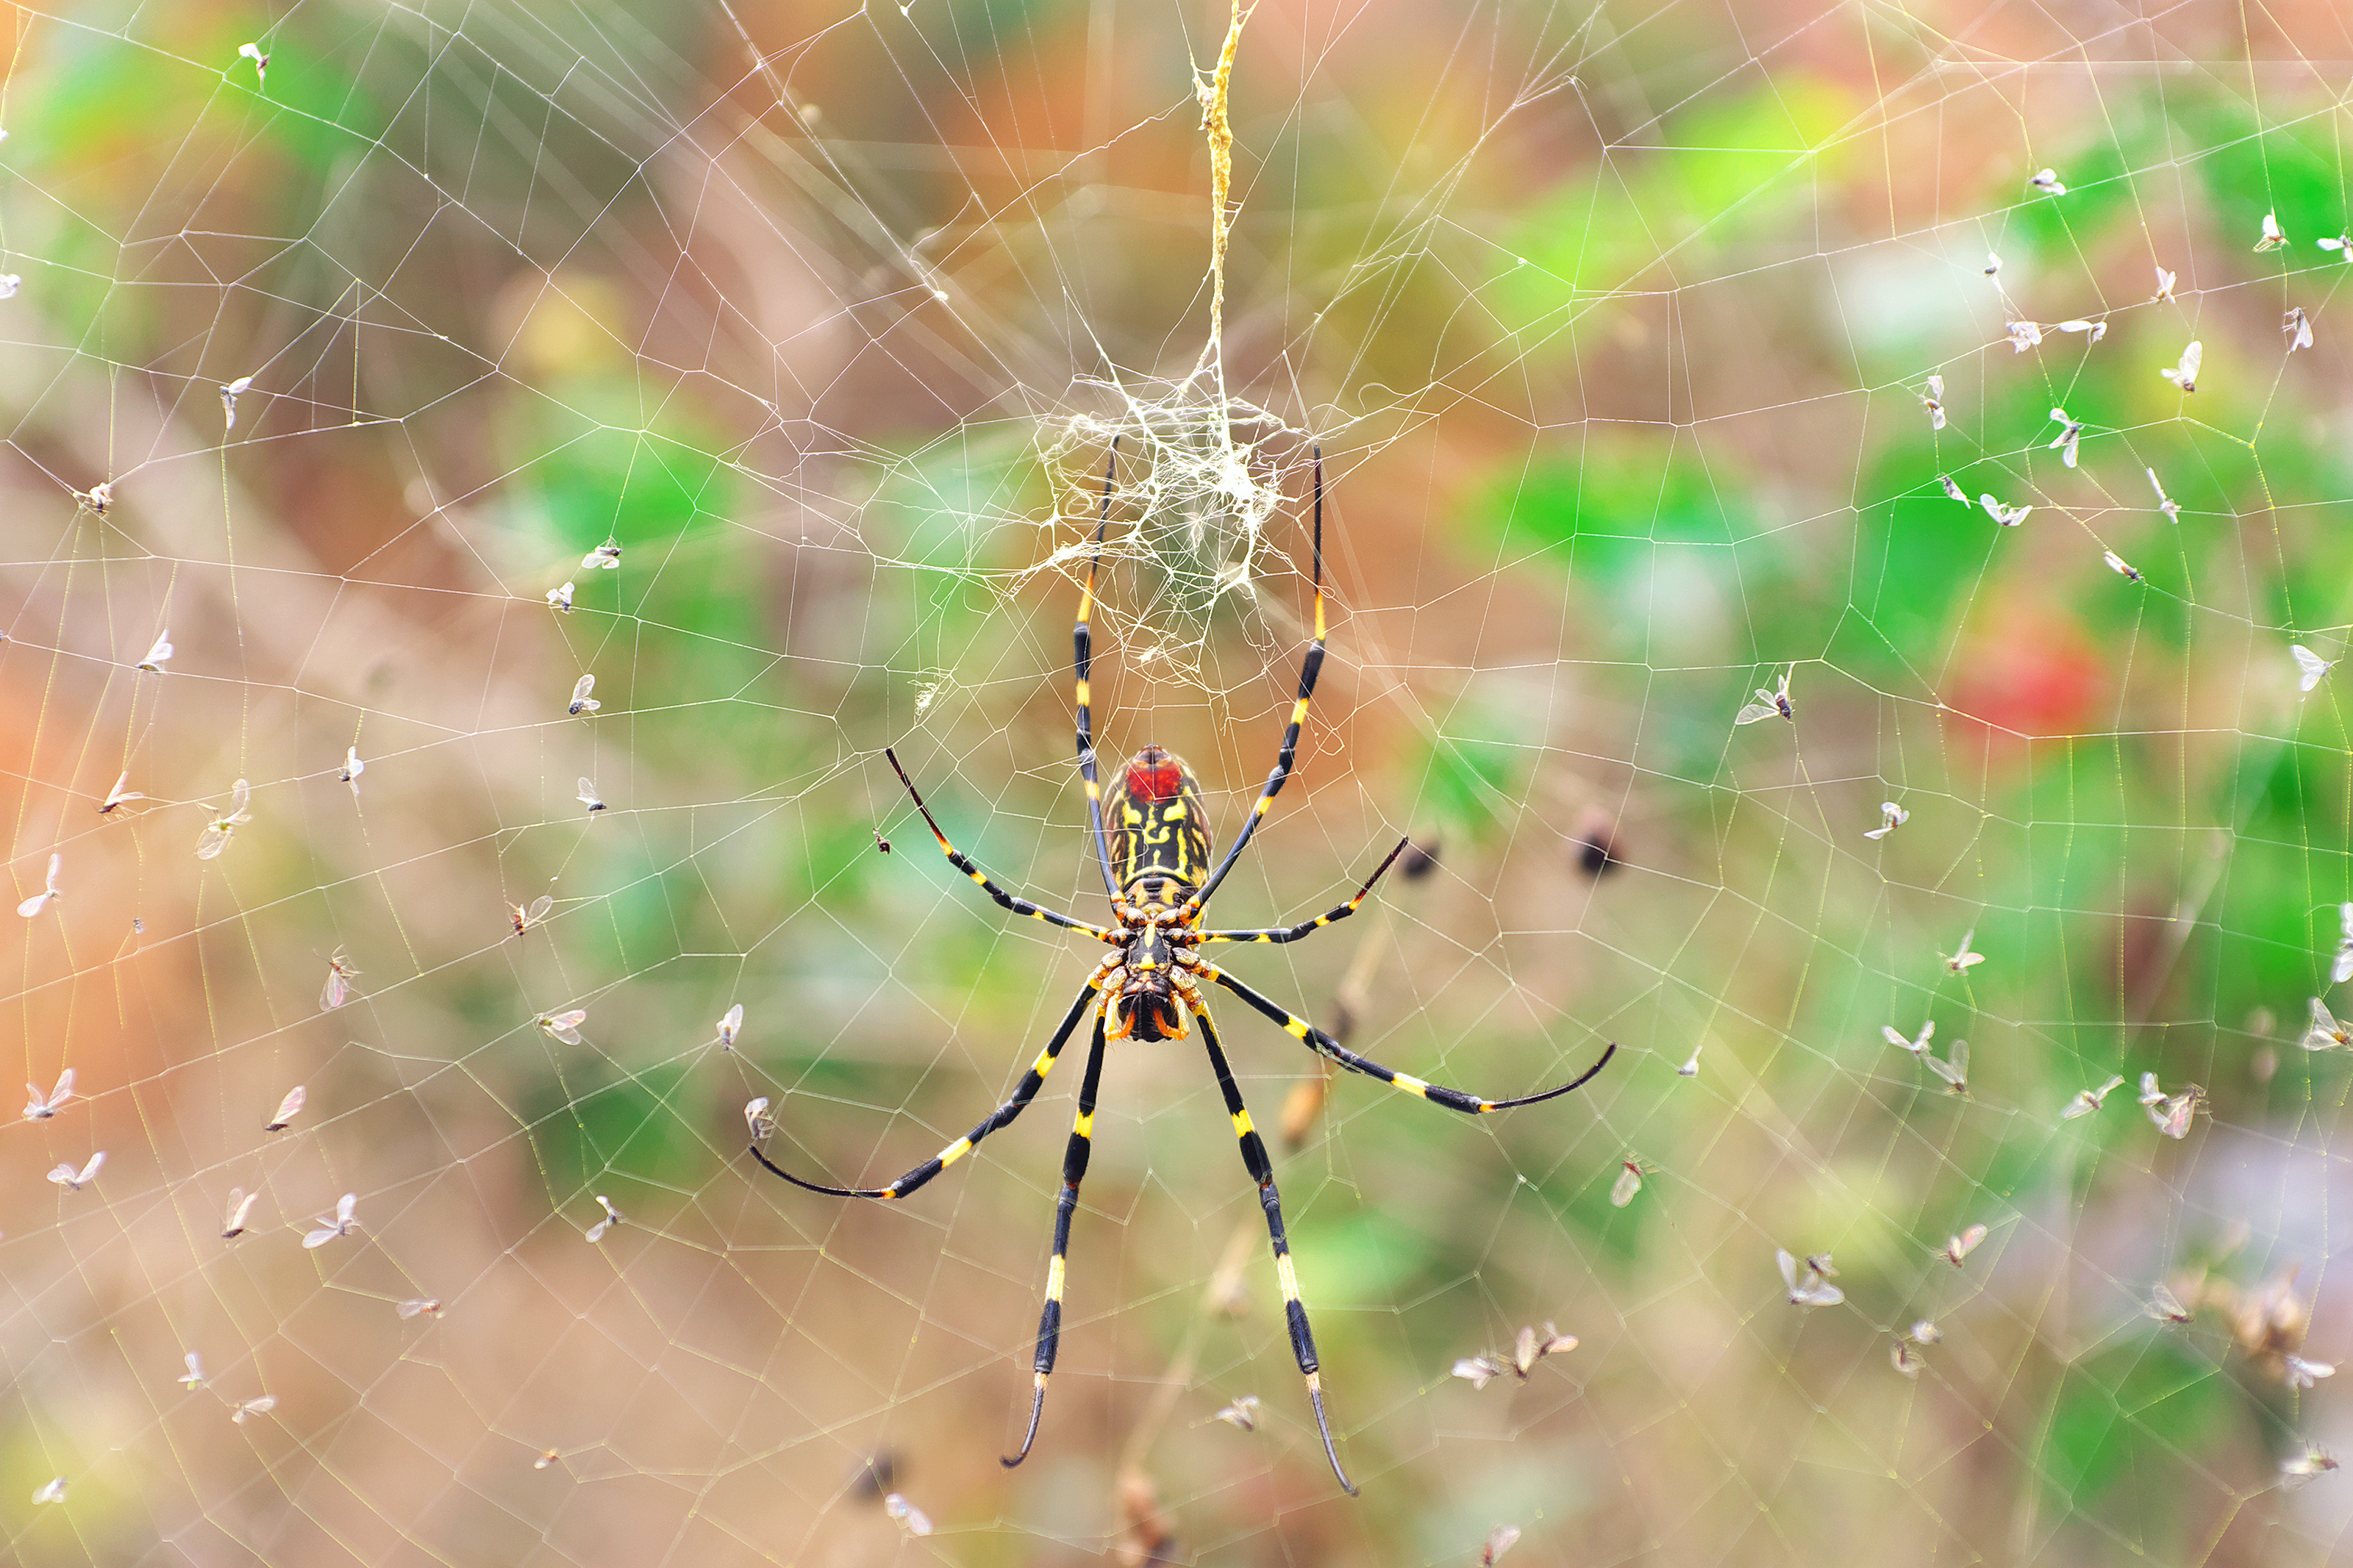 Invasión en Florida: Científicos alertan de la expansión de enormes arañas